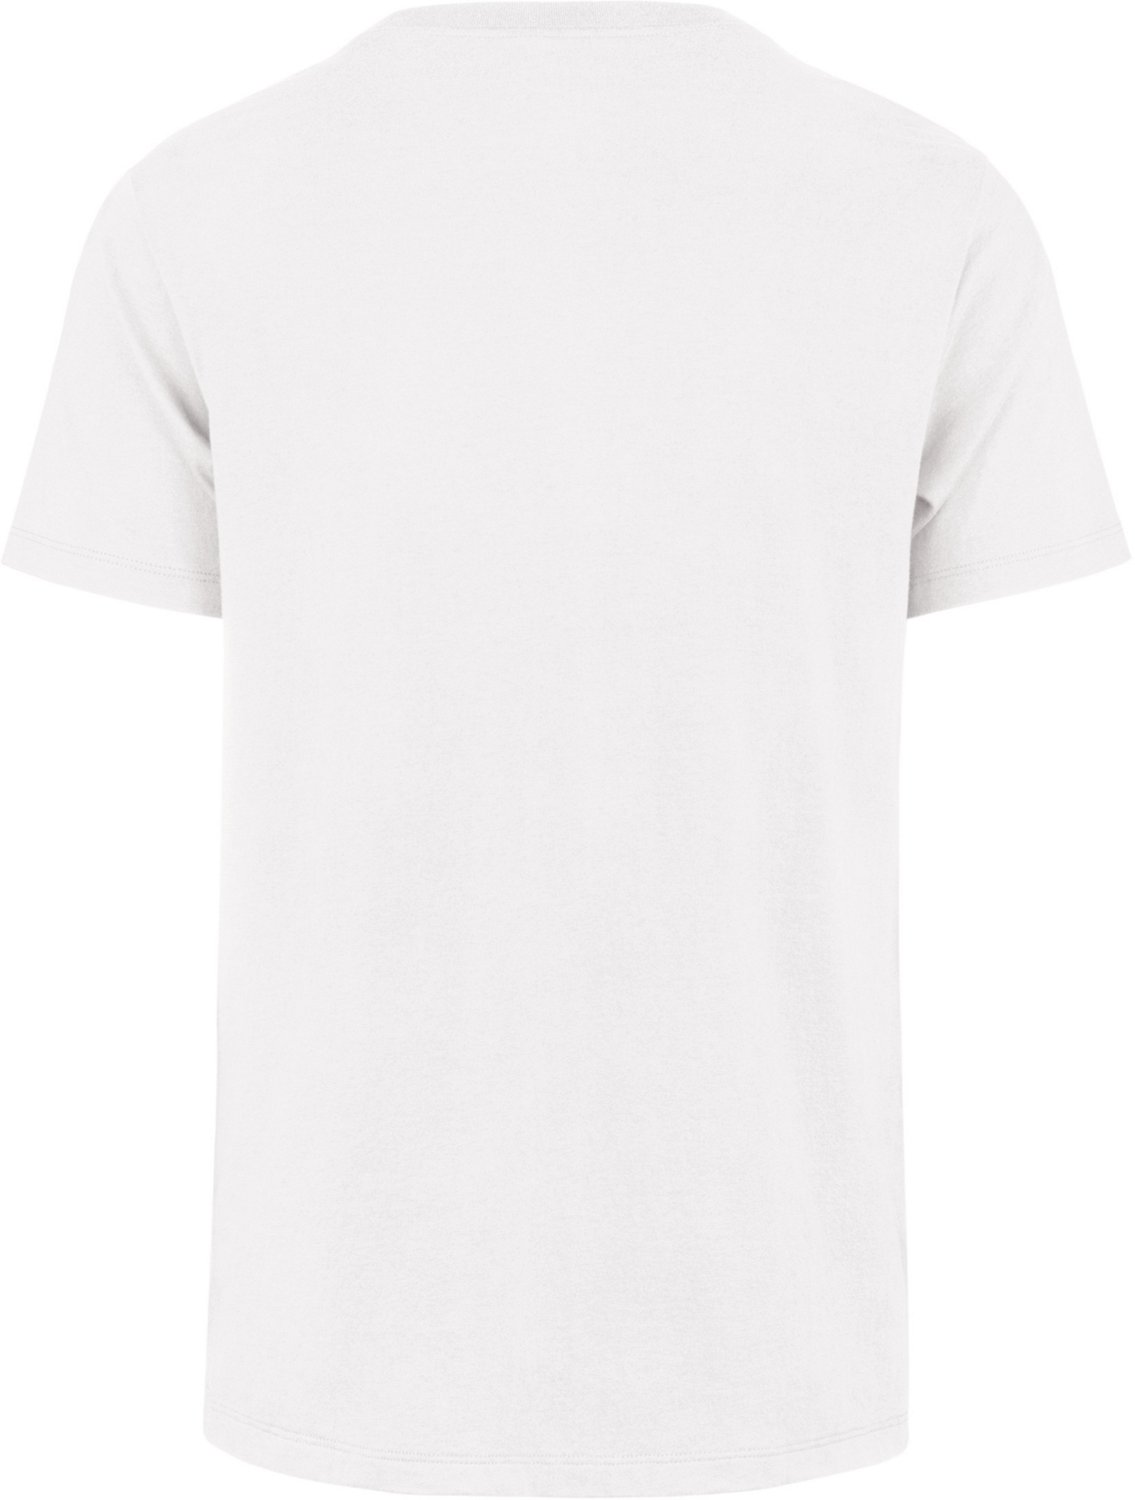 47 Brand Atlanta Braves Hudson Pocket T-shirt for Men